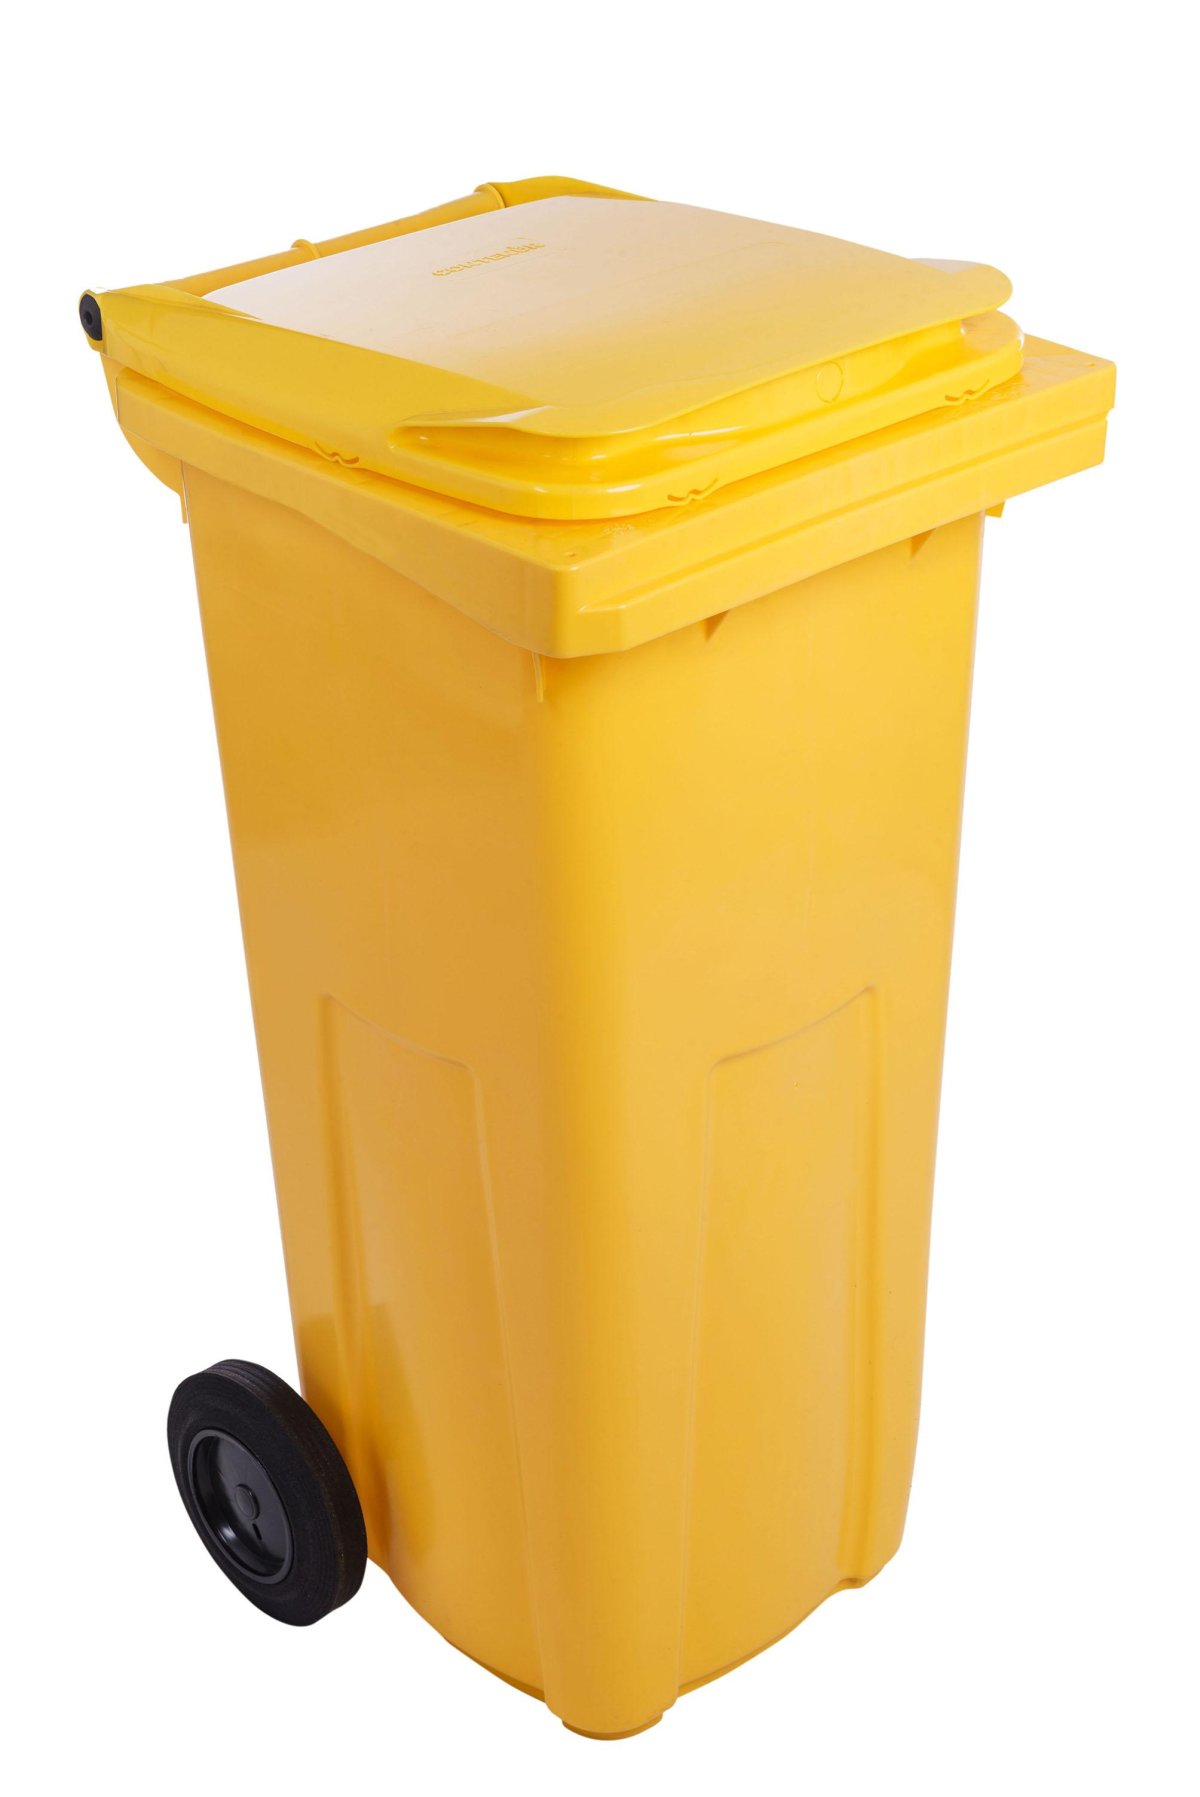 popelnice 120l žlutá plastová